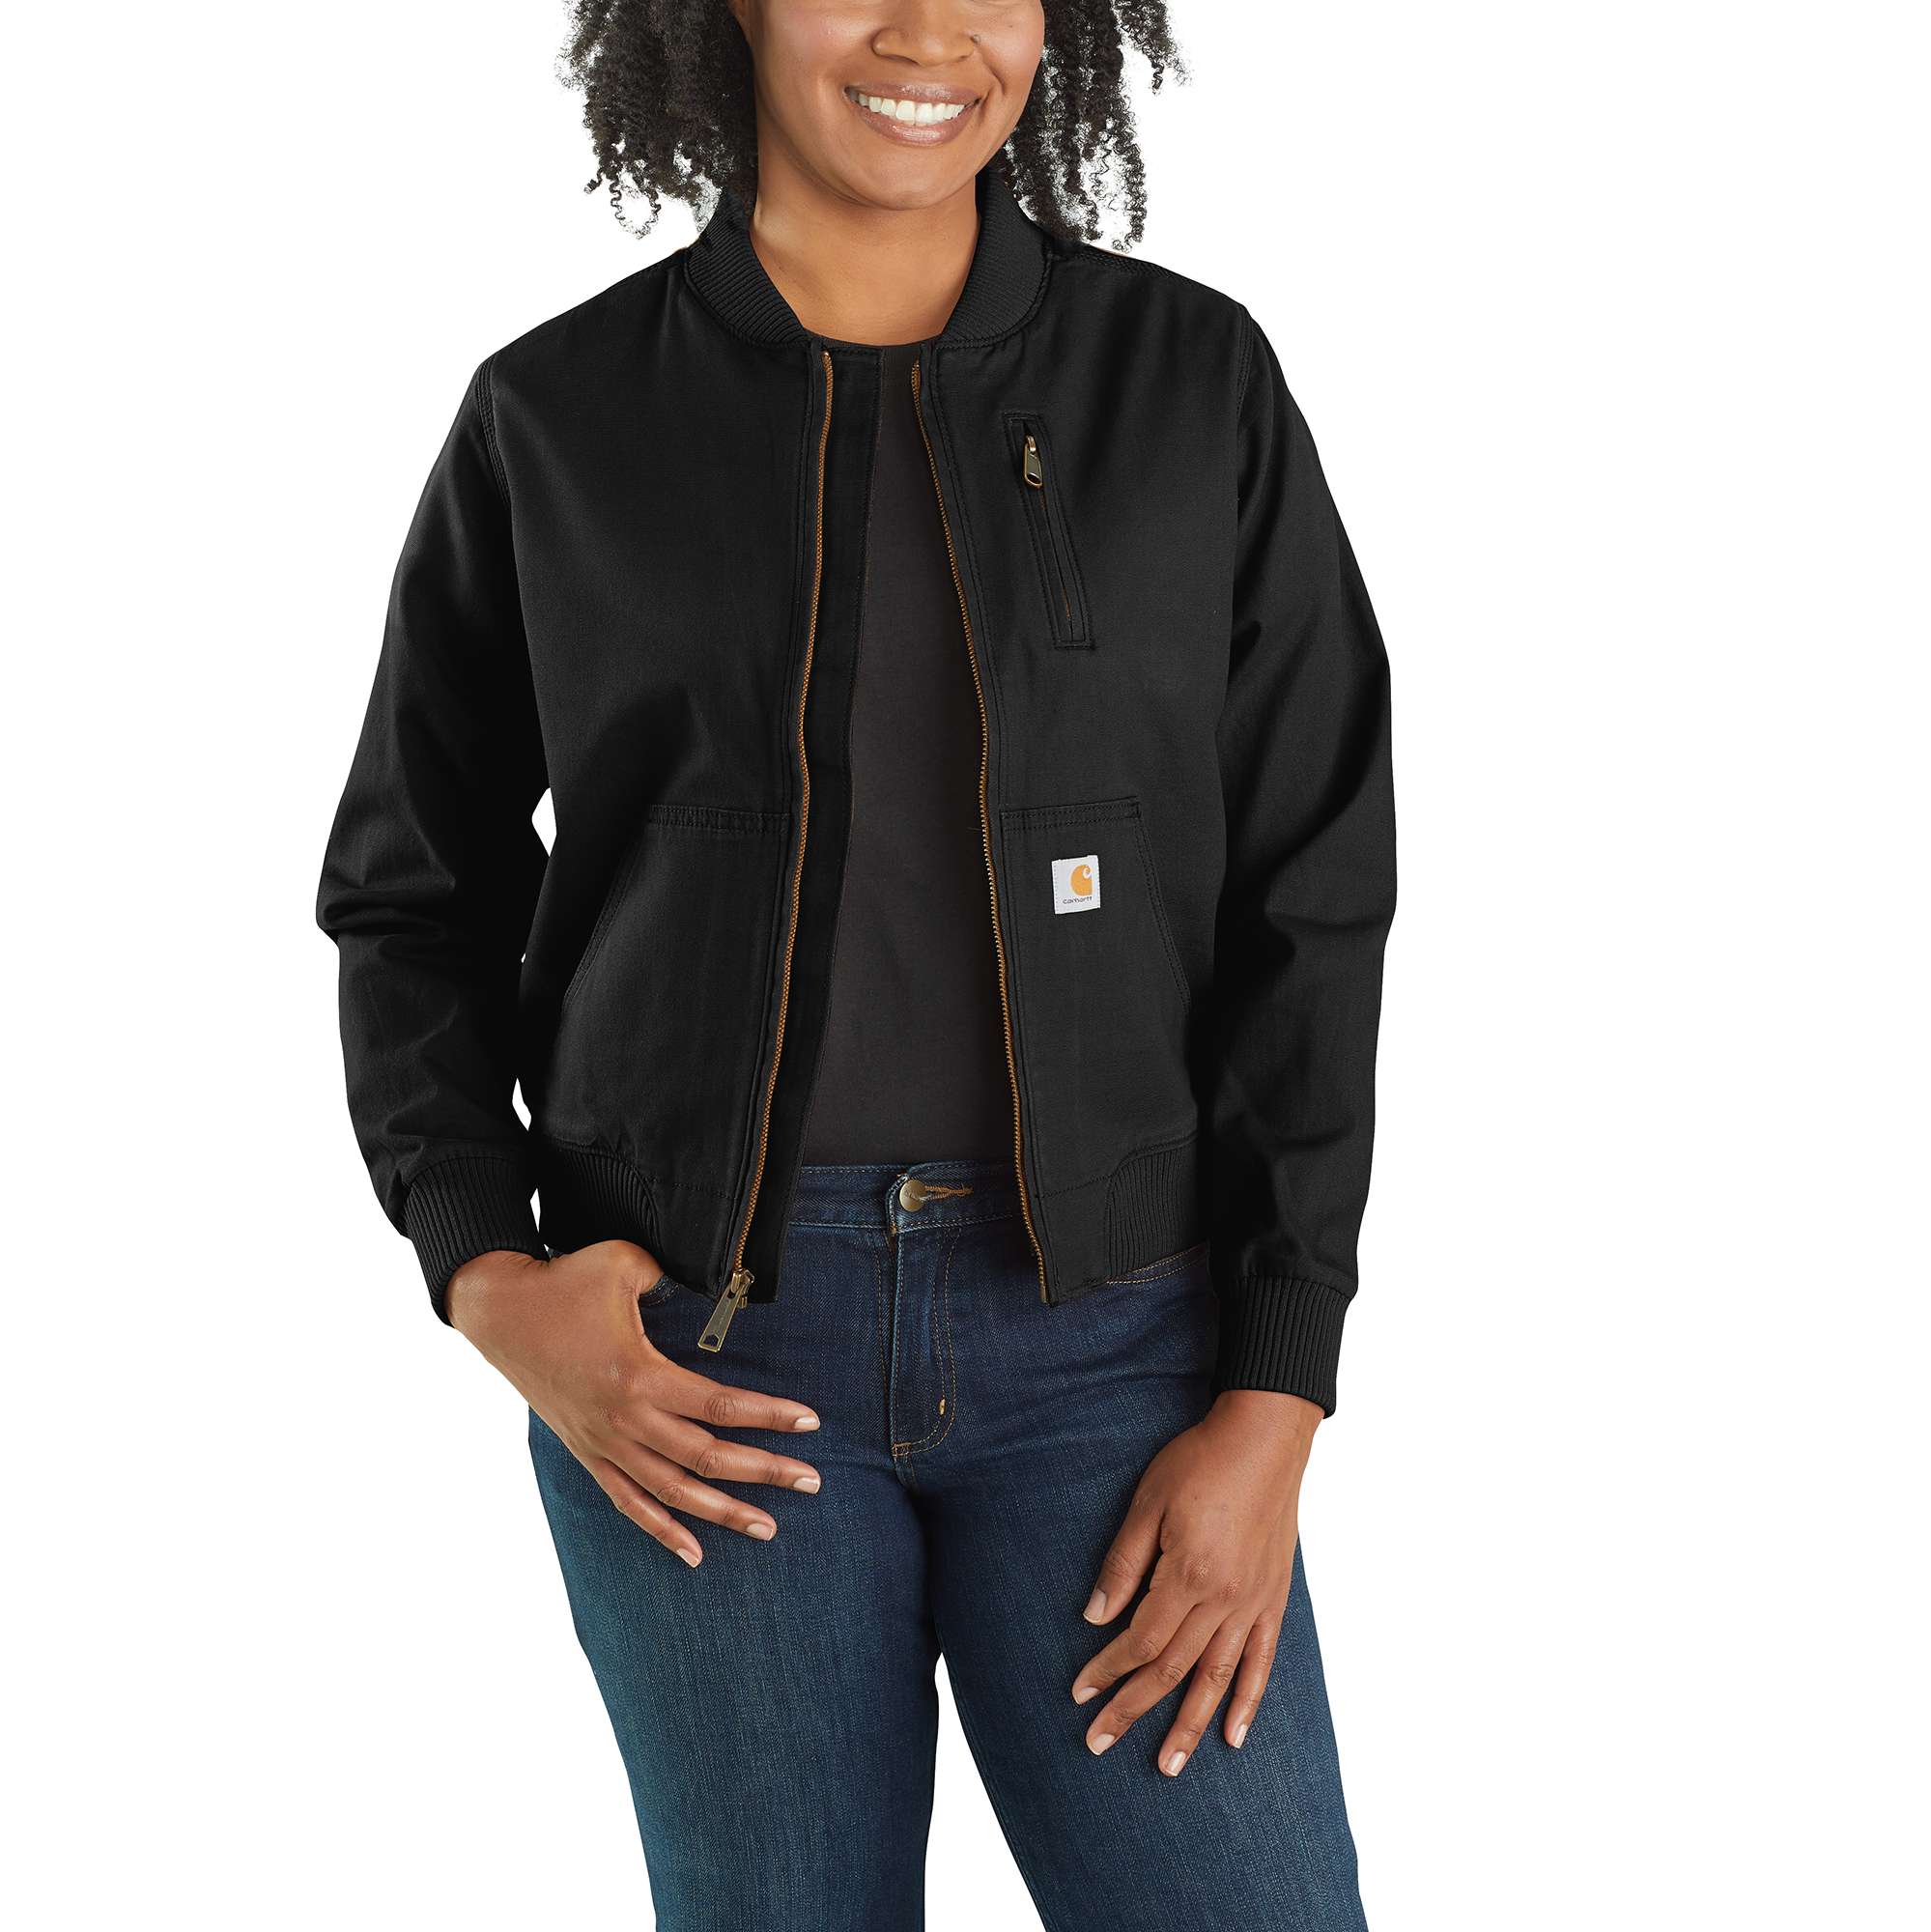 Carhartt Women's Black Canvas Work Jacket (Medium) in the Work